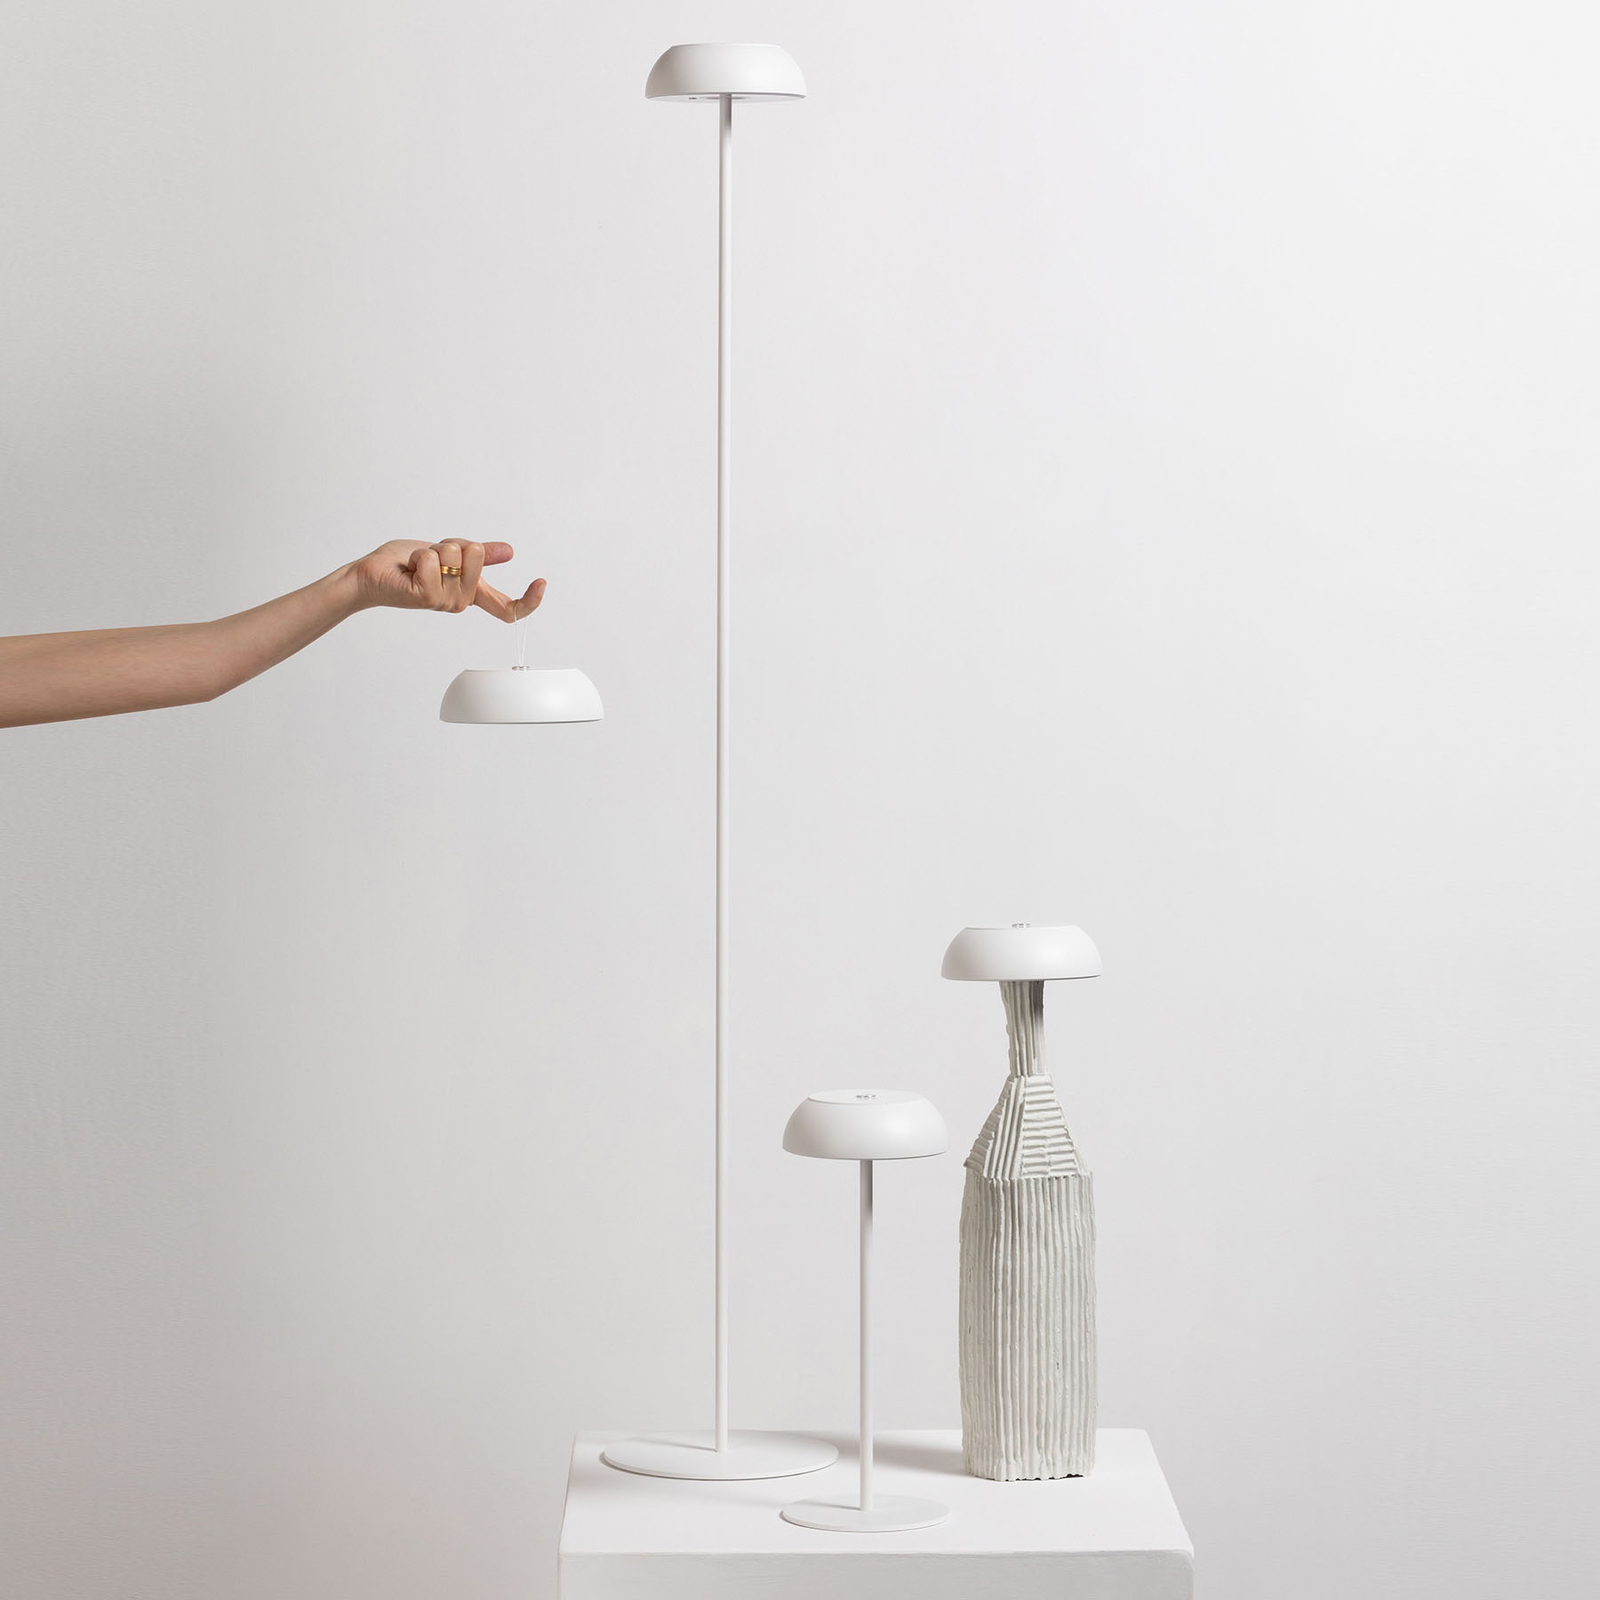 Axolight Float lampadaire de designer LED, blanc